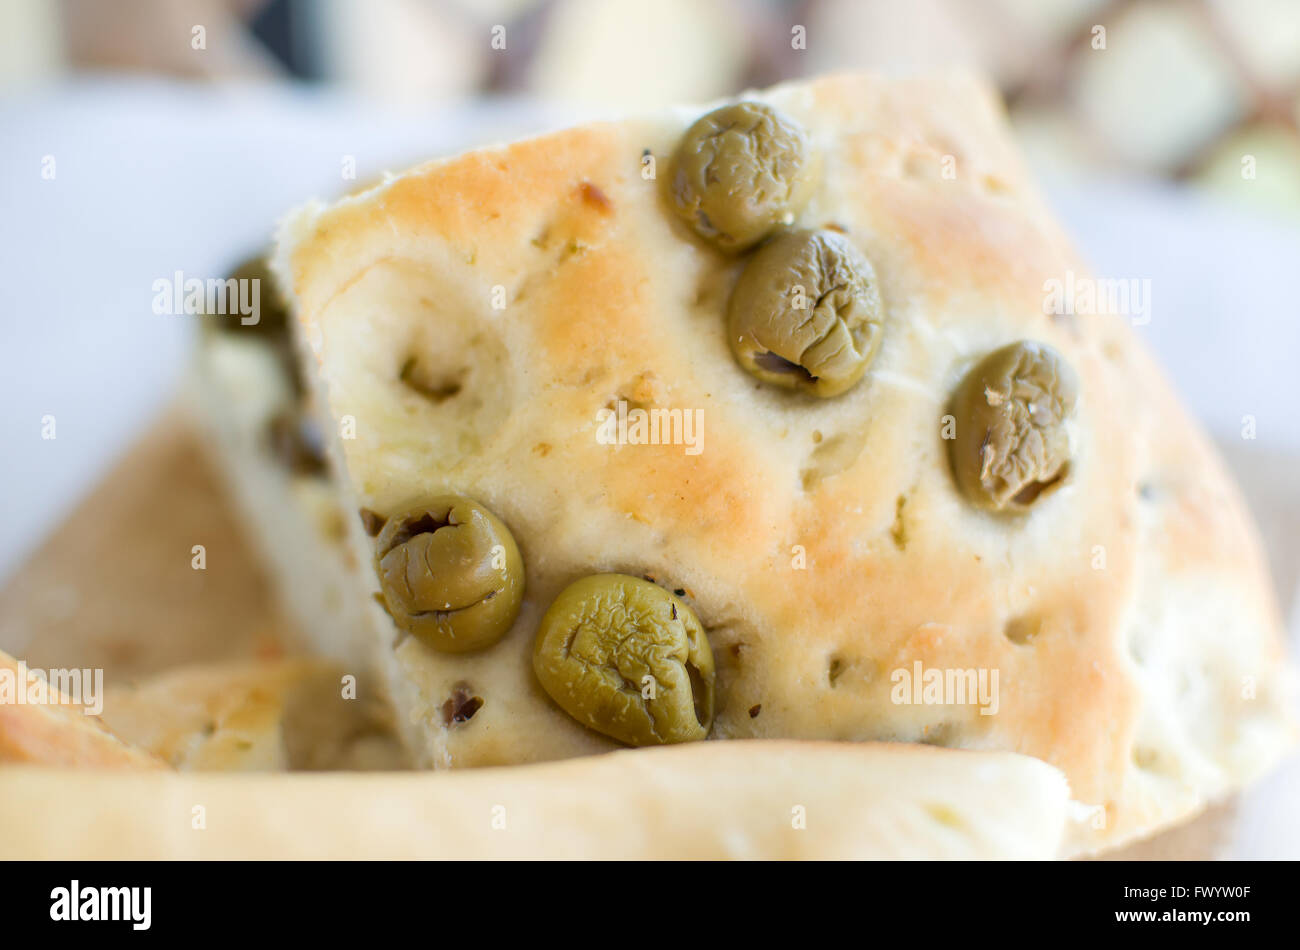 Focaccia italie pain plat cuit au four télévision gros plan olives pain italien genovese ligure Banque D'Images